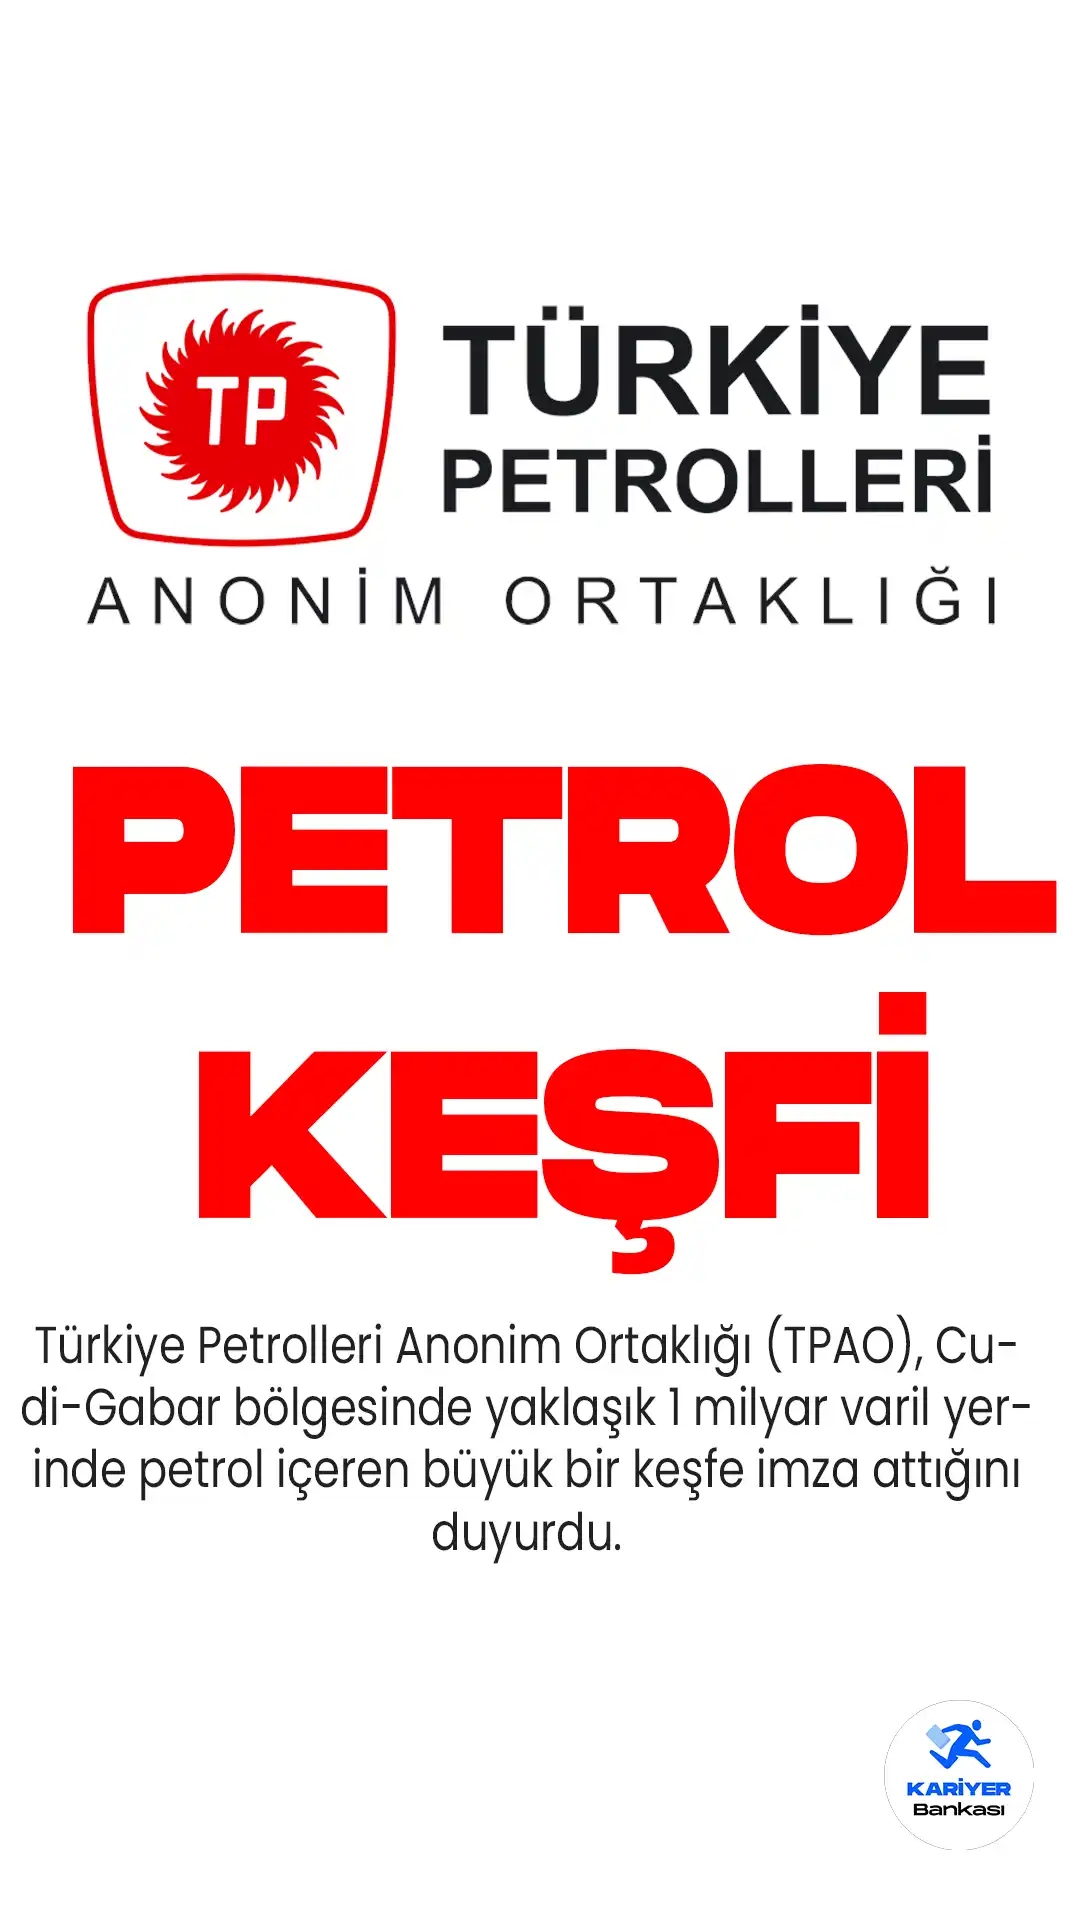 Türkiye Petrolleri Anonim Ortaklığı (TPAO), Cudi-Gabar bölgesinde Şehit Aybüke Yalçın-1 kuyusunda yaklaşık 1 milyar varil yerinde petrol içeren büyük bir petrol keşfi olduğunu duyurdu.